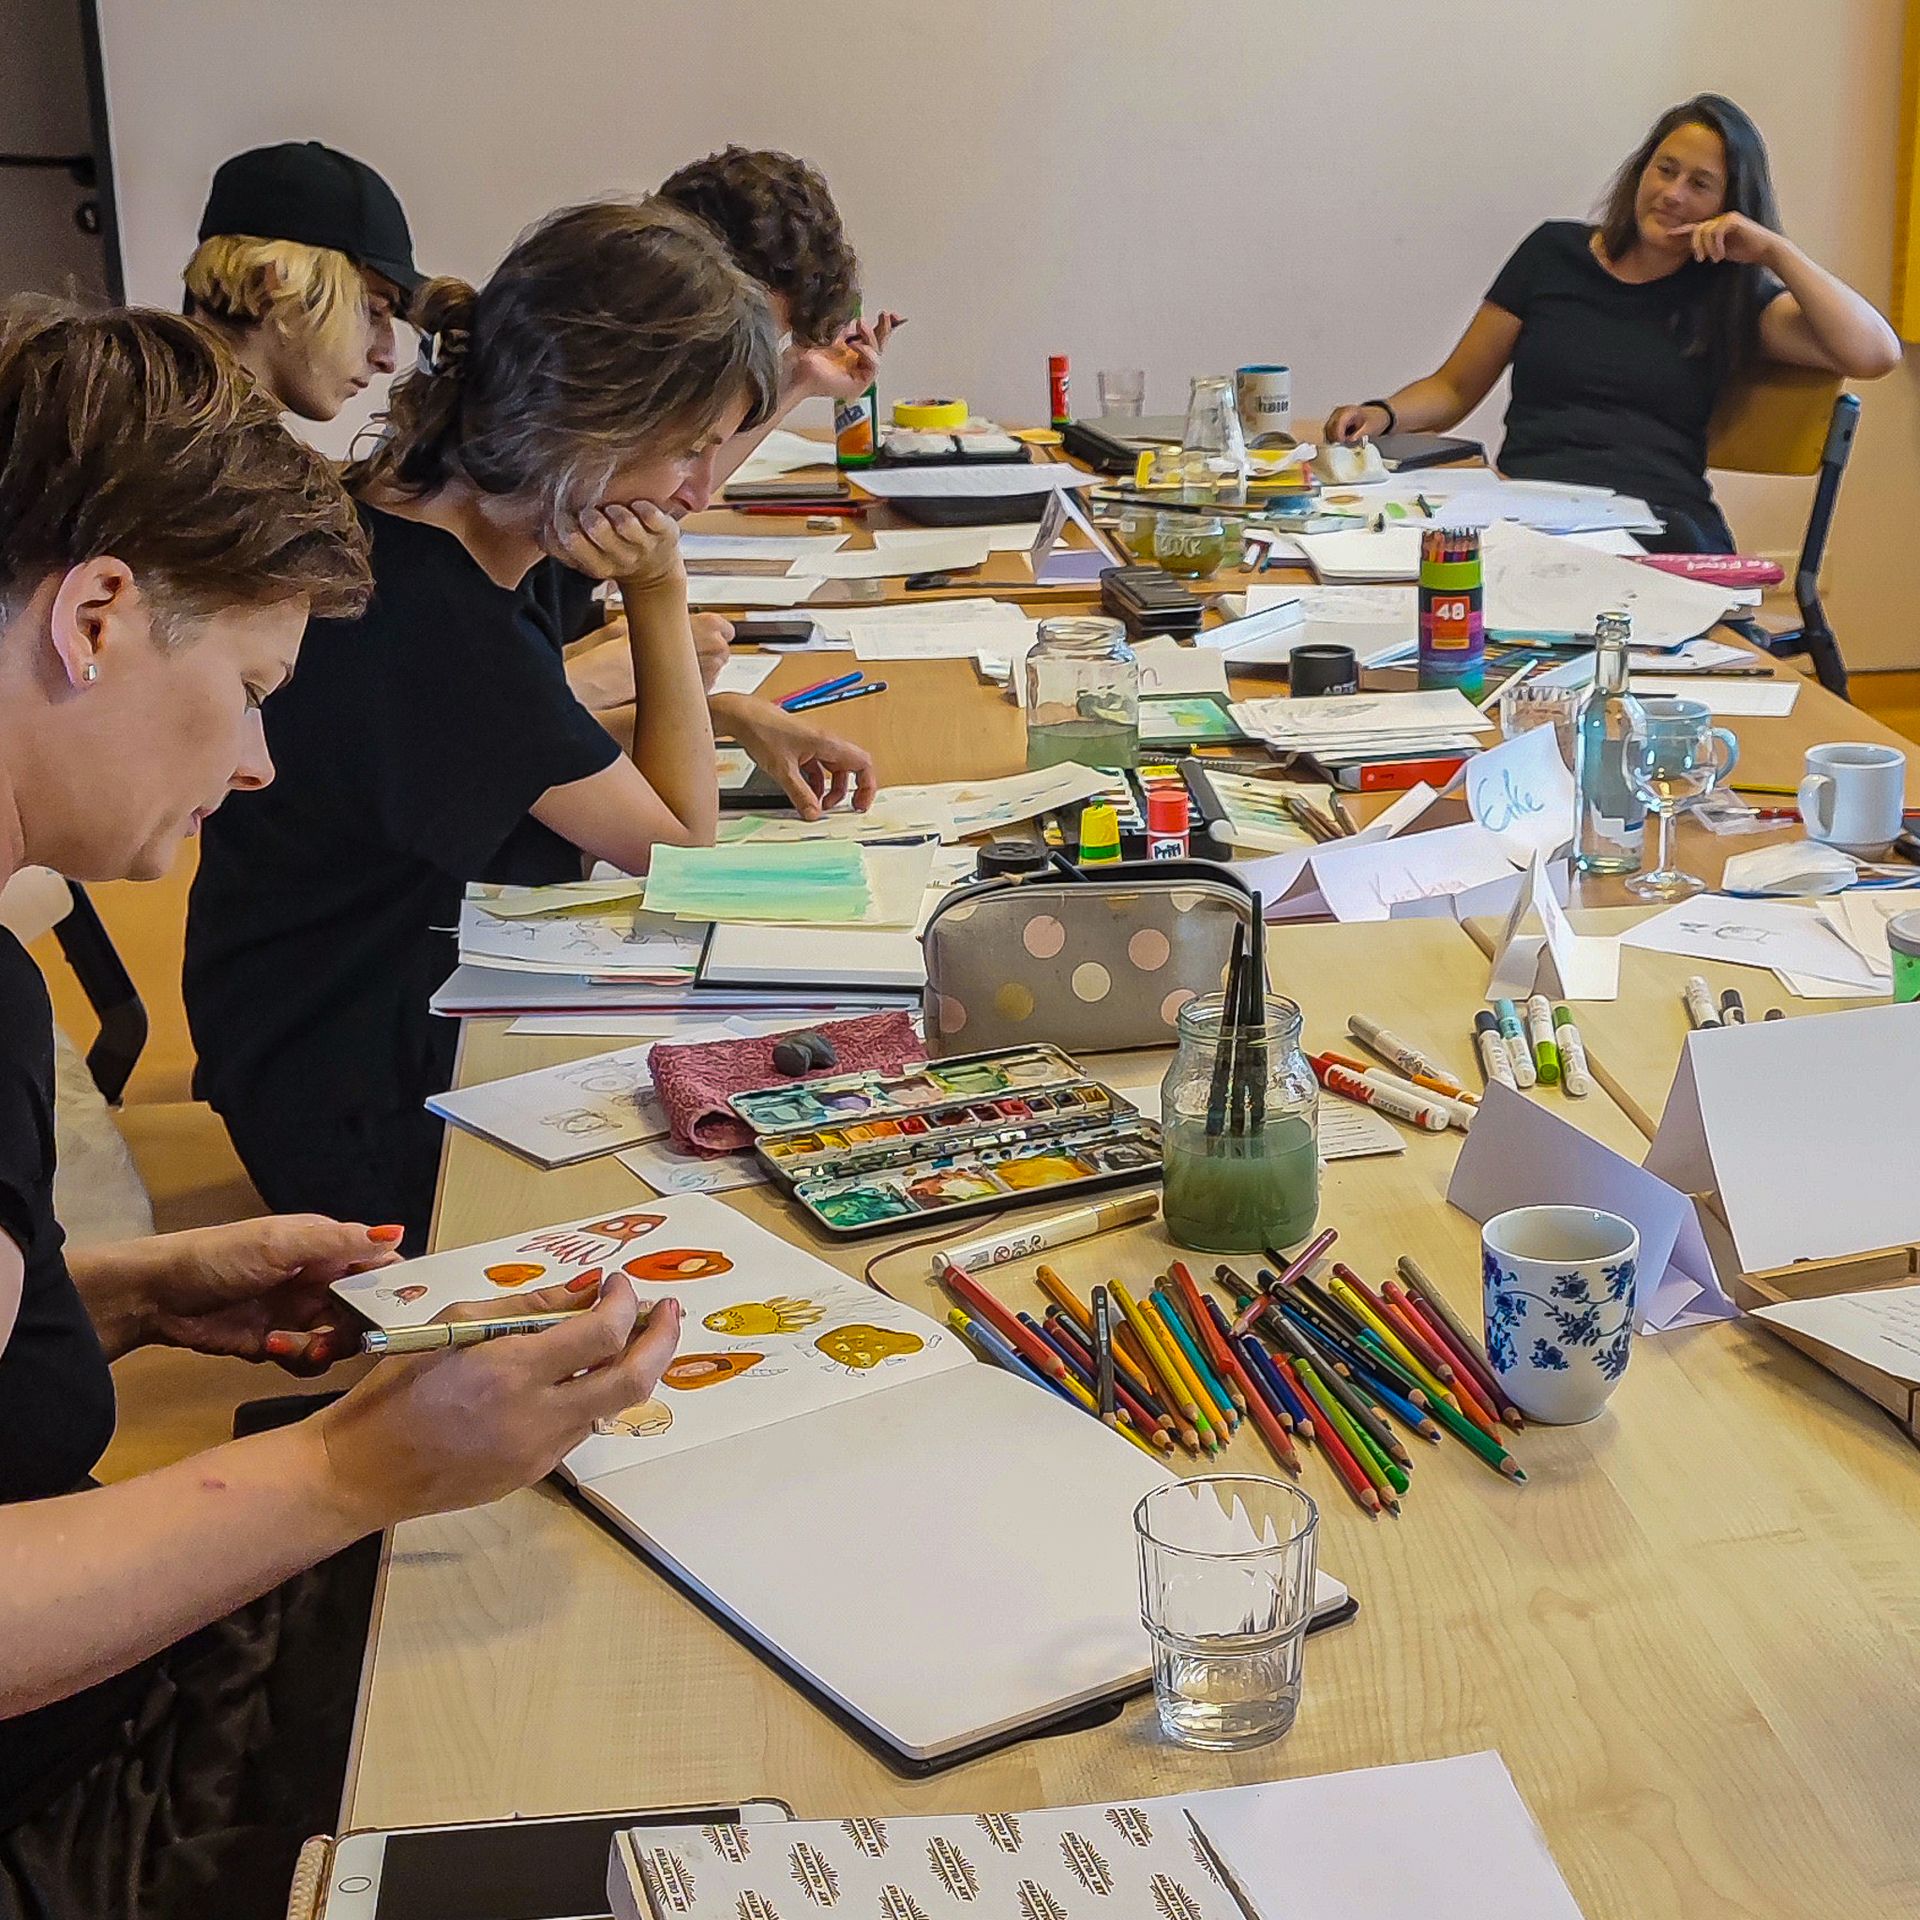 Das Bild zeigt Menschen am Tisch im Kurs Illustration darunter auch Franziska Ludwig